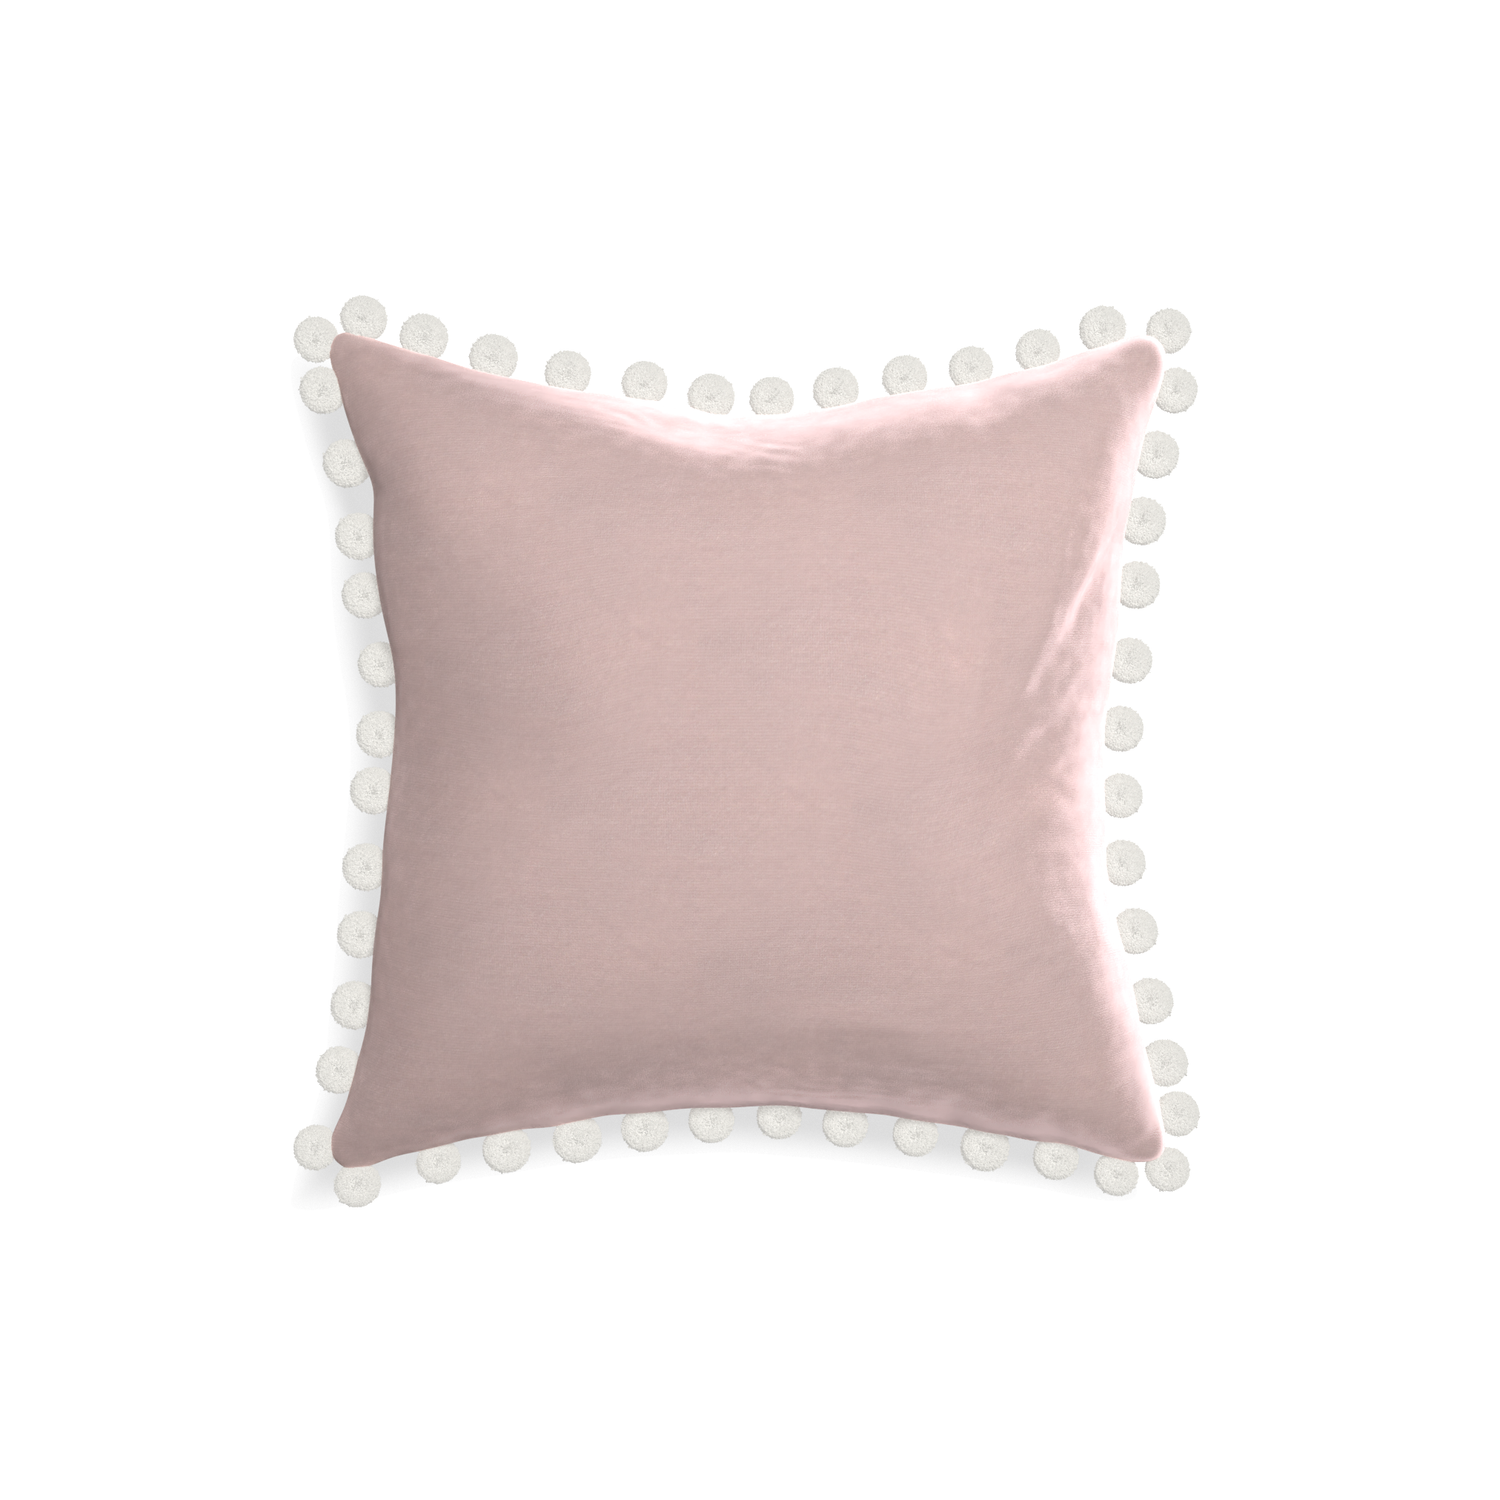 square light pink velvet pillow with white pom poms